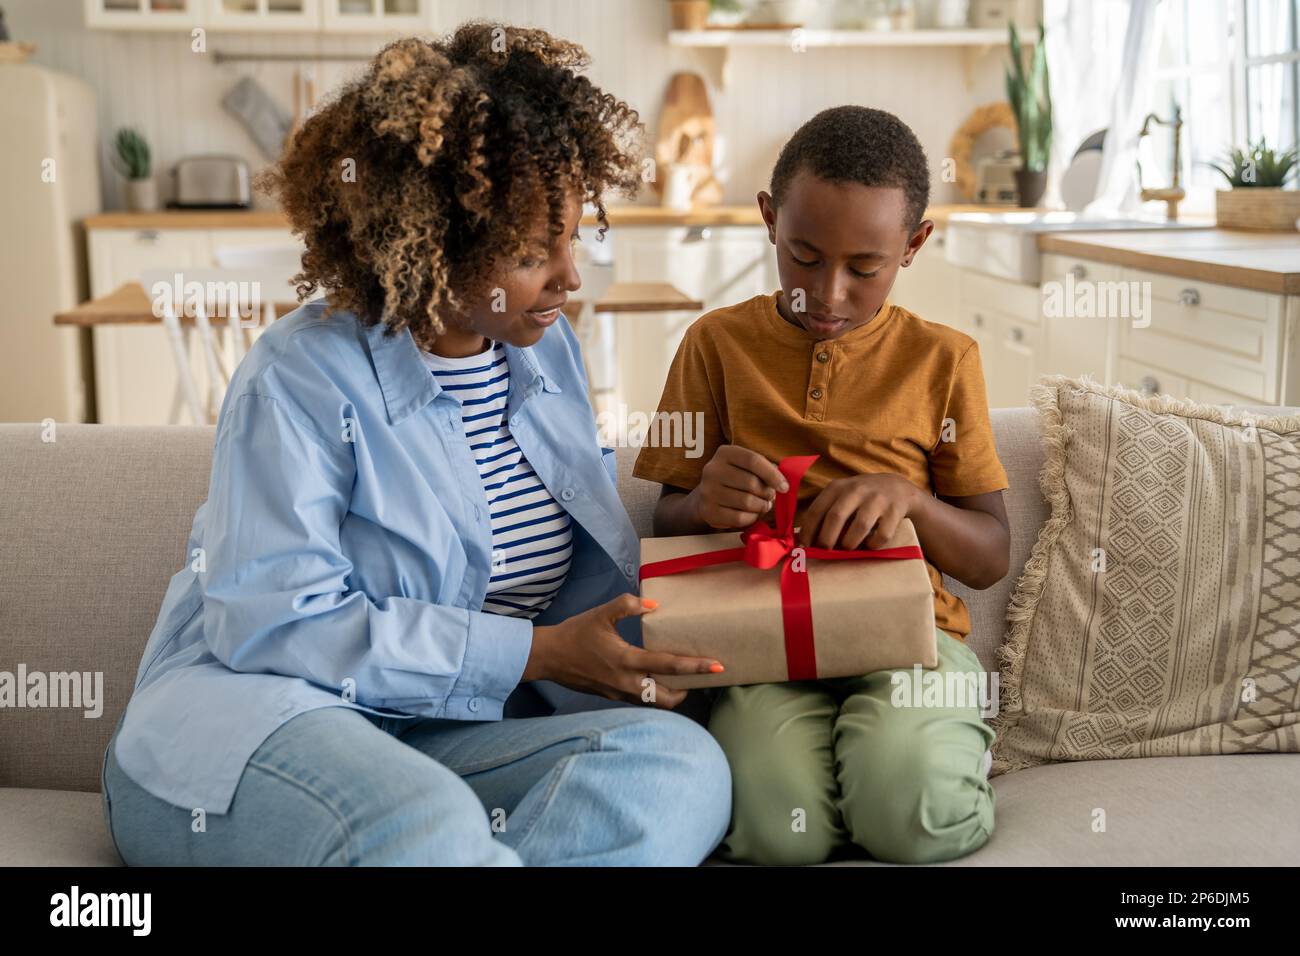 Amorevole donna nera mamma si congratula felice piccolo figlio con compleanno dare regalo avvolto con nastro rosso Foto Stock